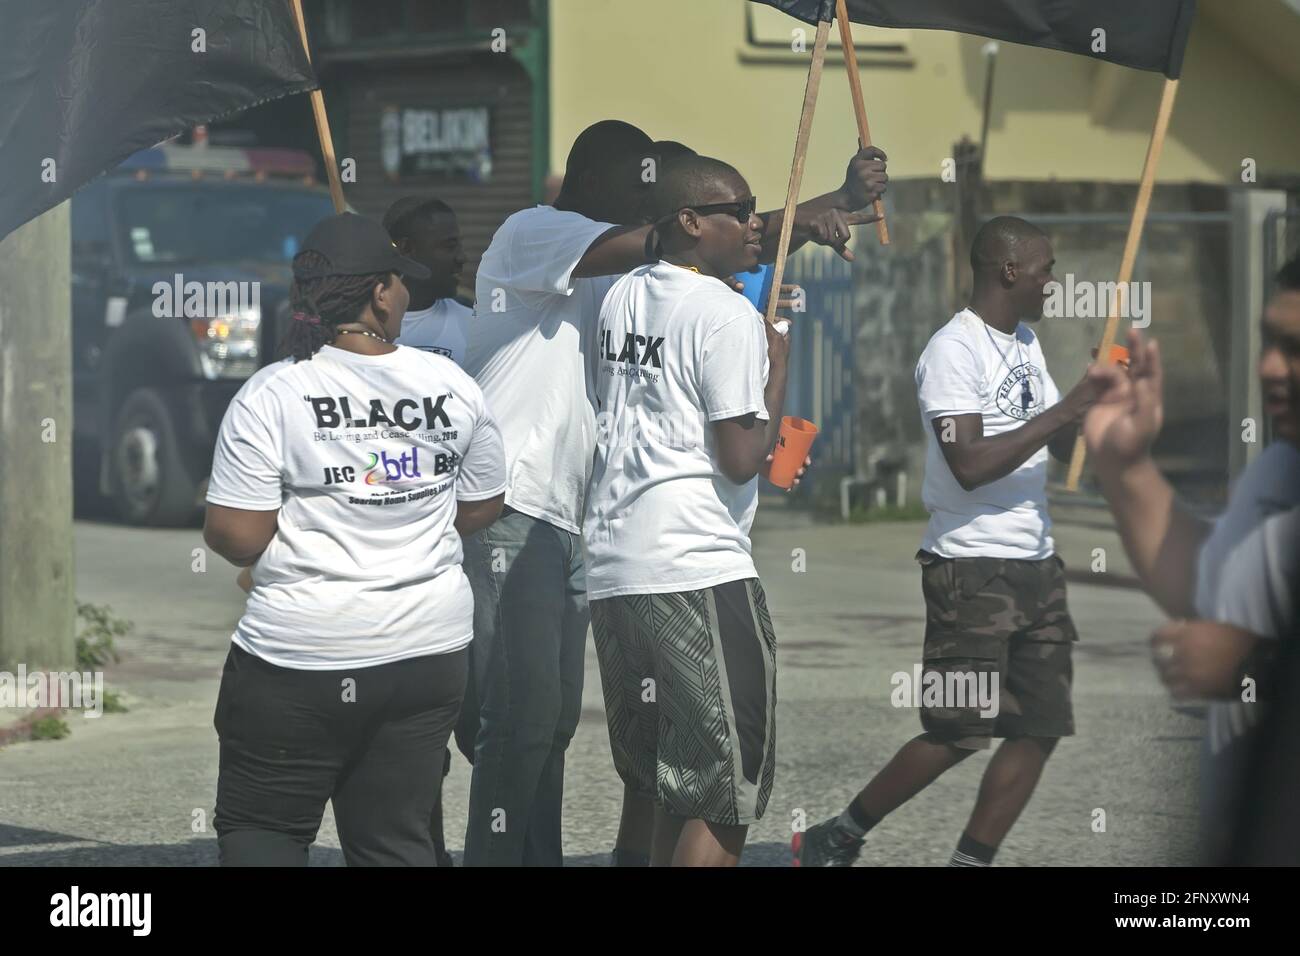 Belize City/Belize - 17 mars 2016: Aimer et cesser de tuer: Une MARCHE NOIRE contre le crime et la violence. Jeunes avec drapeaux dans la rue. Banque D'Images